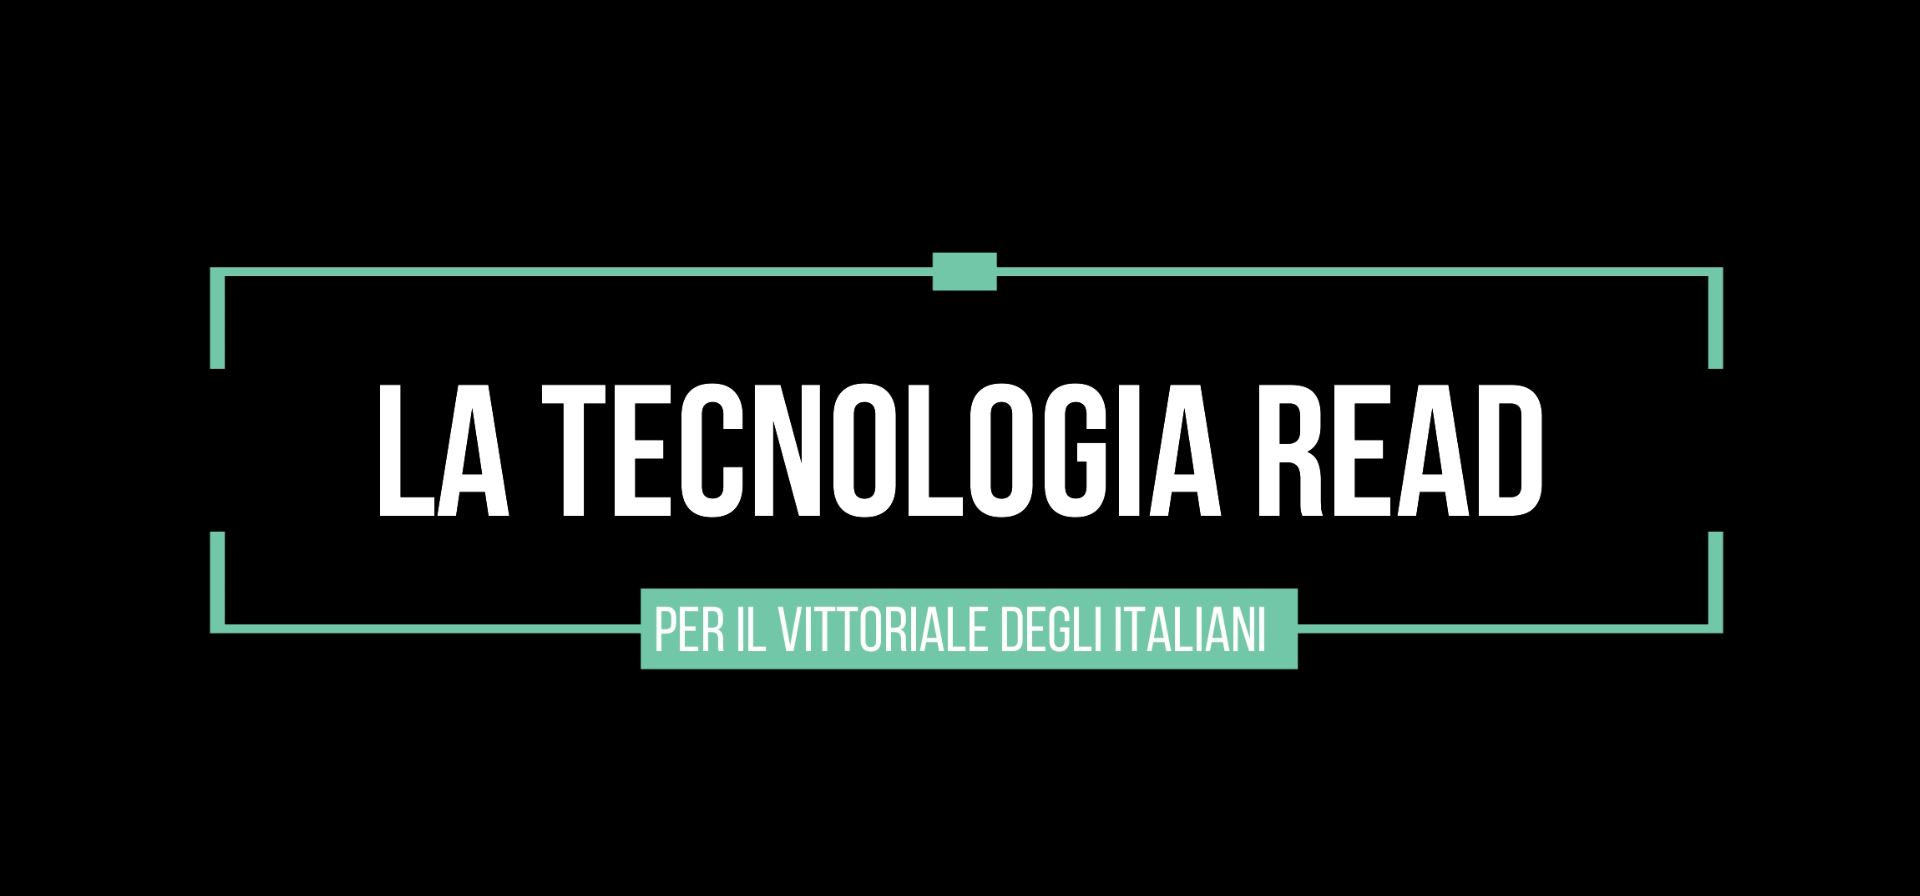 READ technology for the Vittoriale degli Italiani!